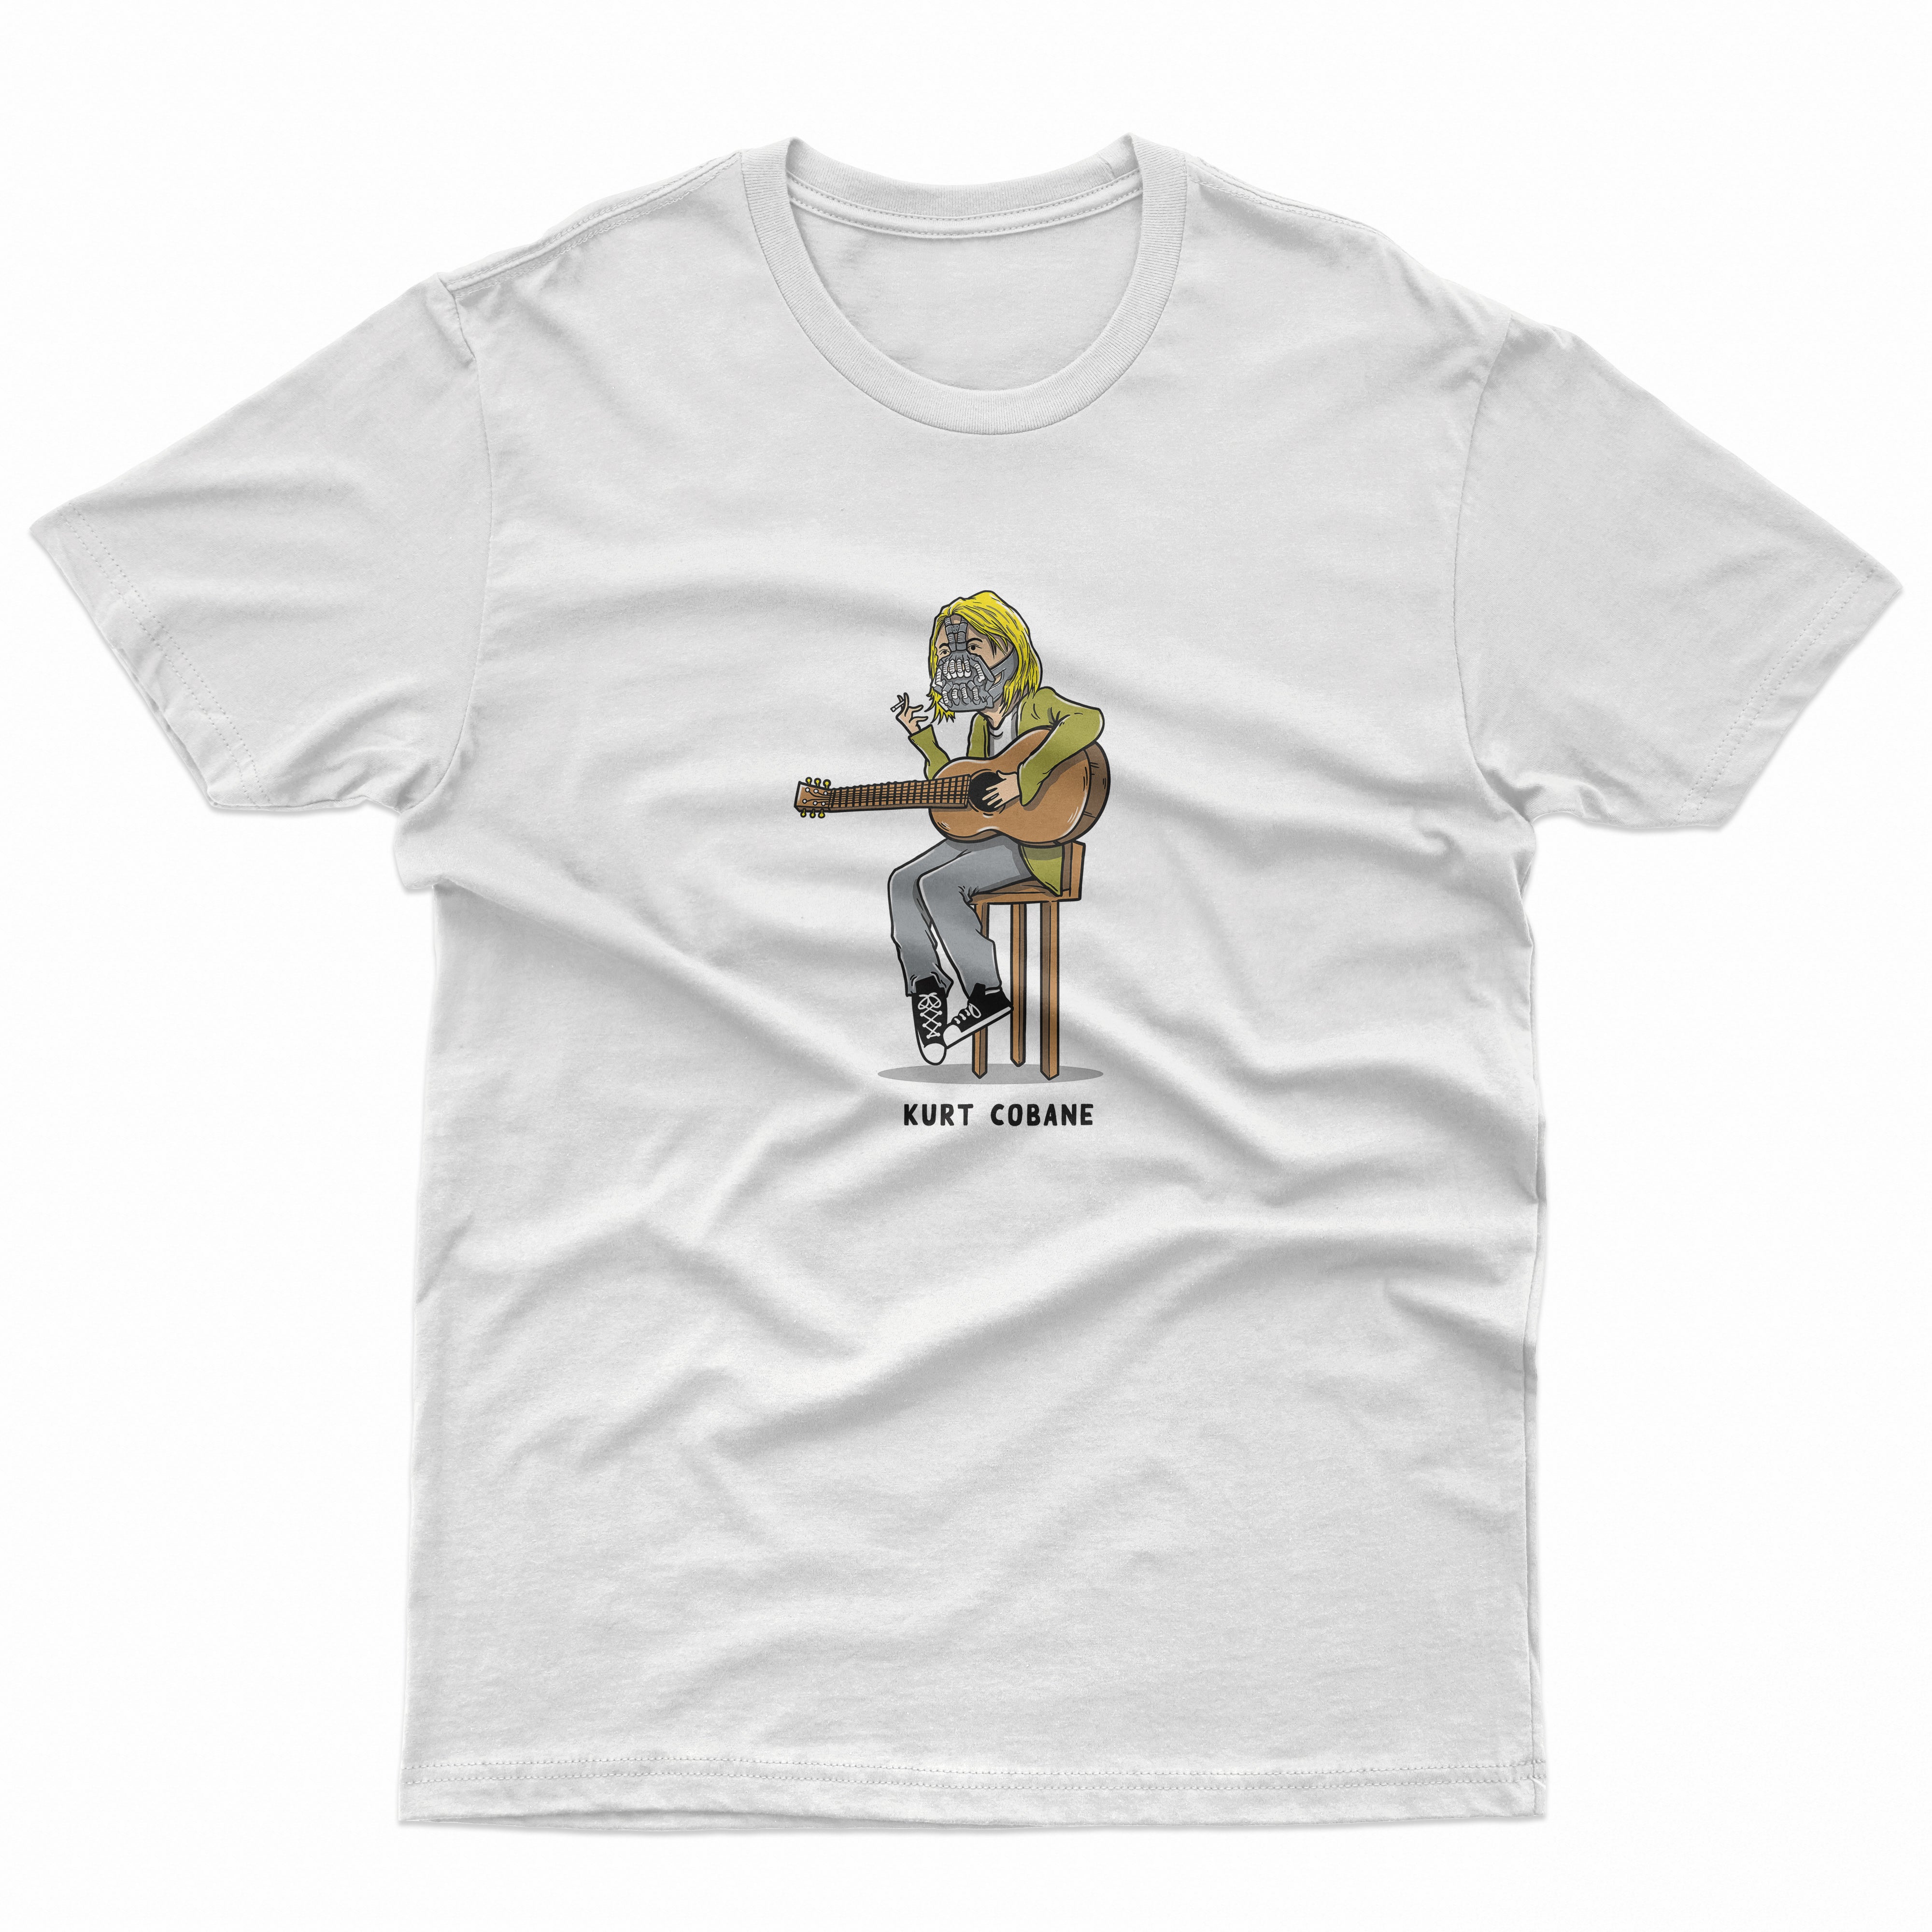 Kurt Cobane T Shirt